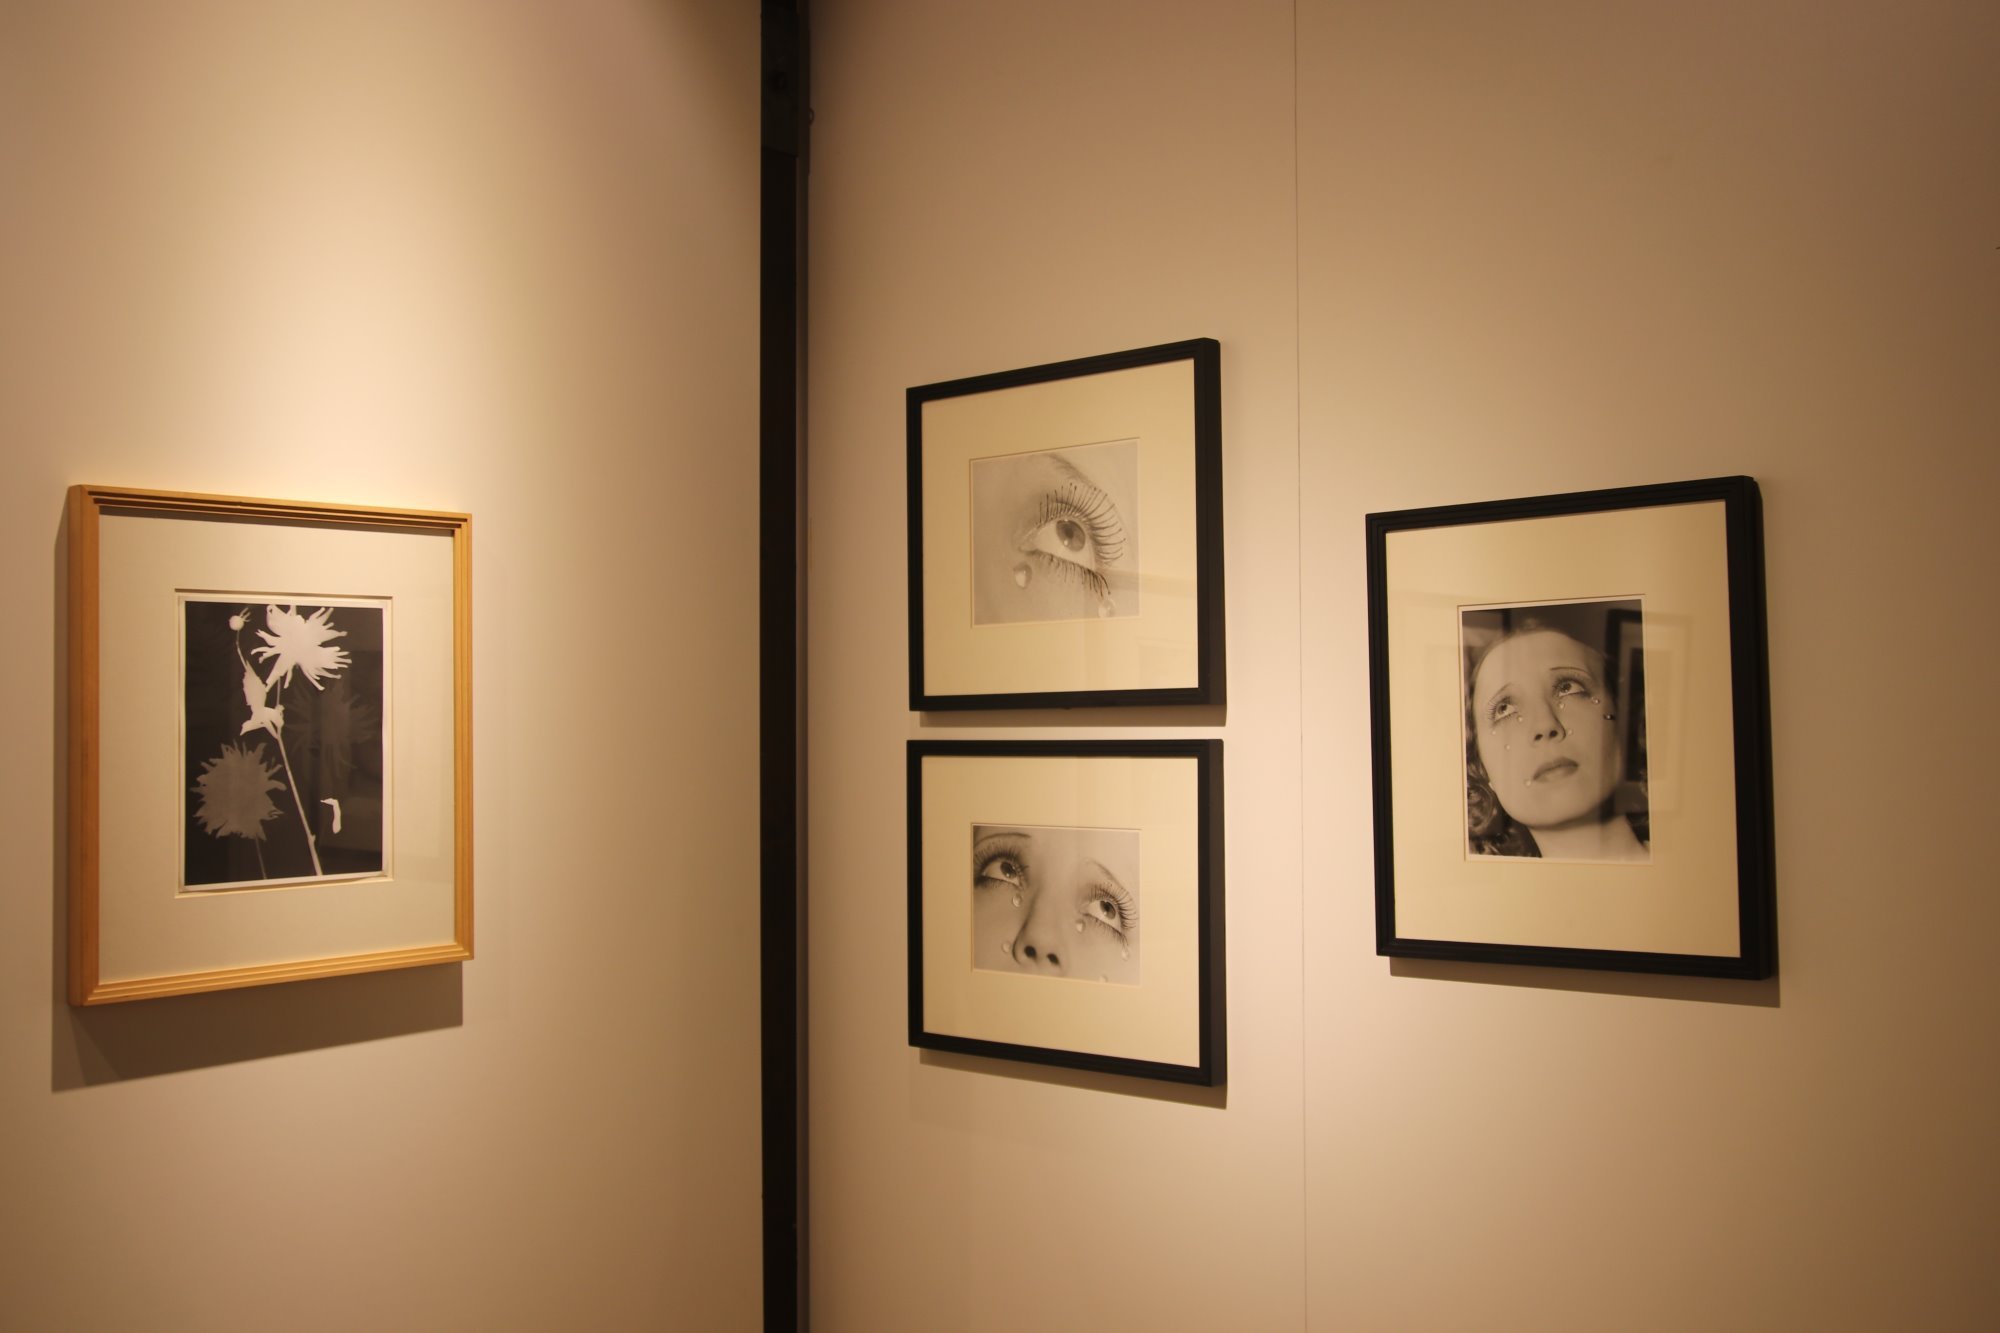 La mostra di Man Ray al Castello di Conversano